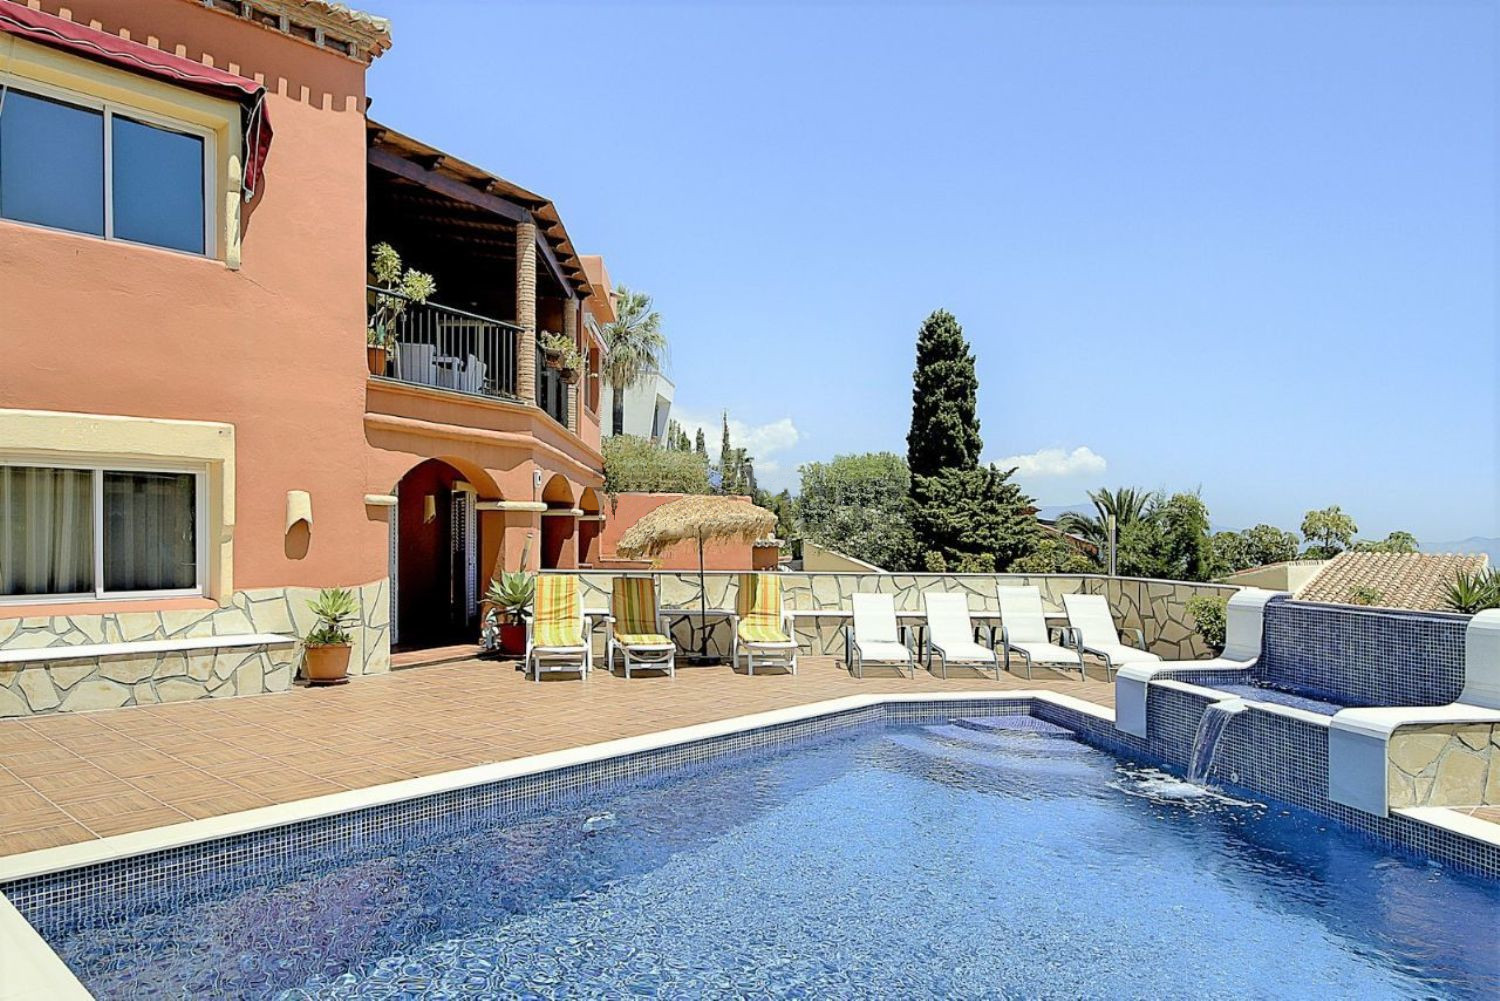 Villa de lujo en venta en urbanización Monte de Los Almendros de Salobreña